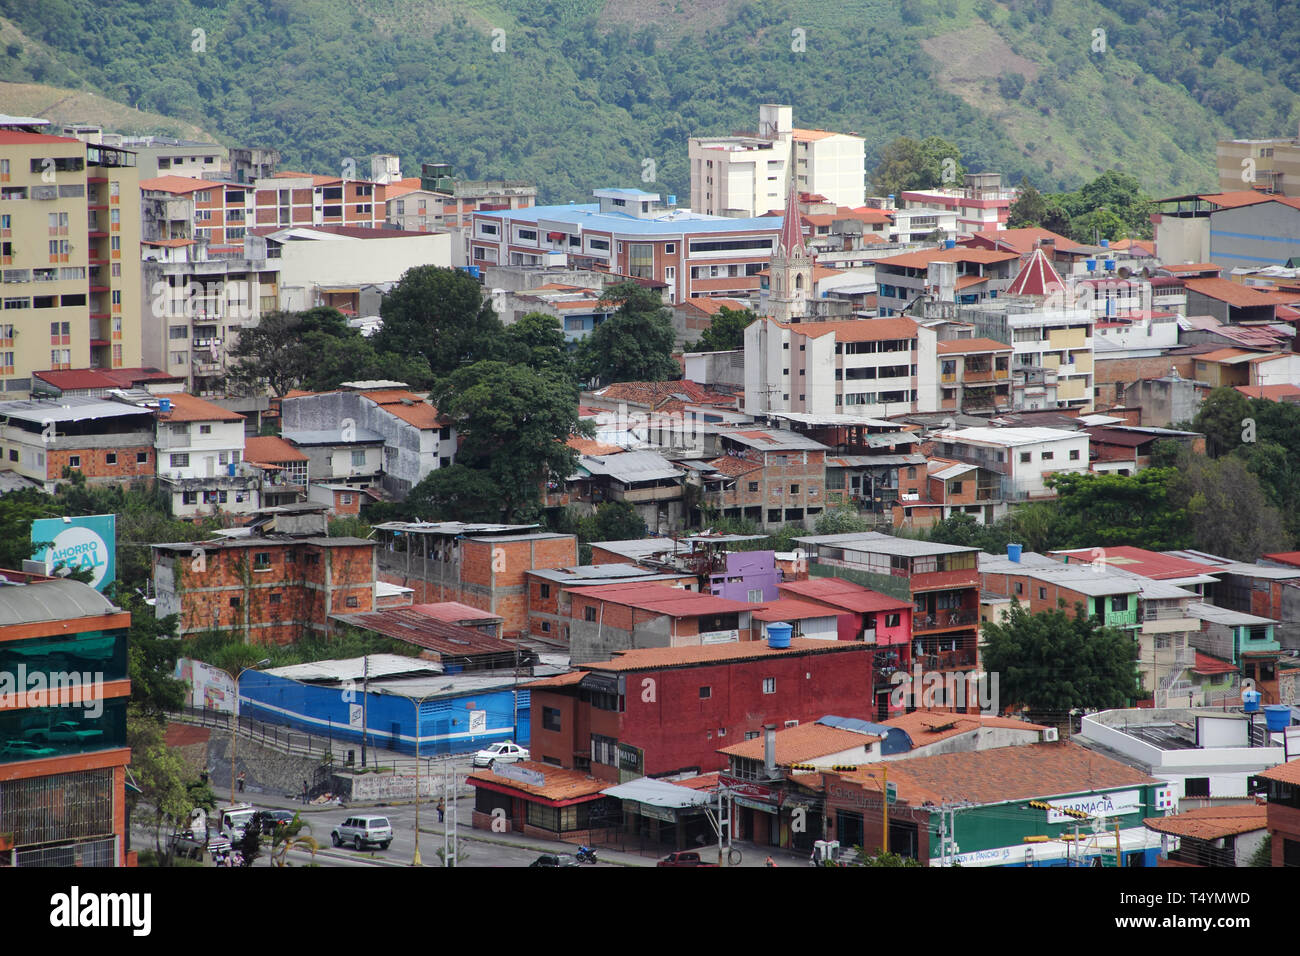 View of Merida City, Venezuela. Stock Photo